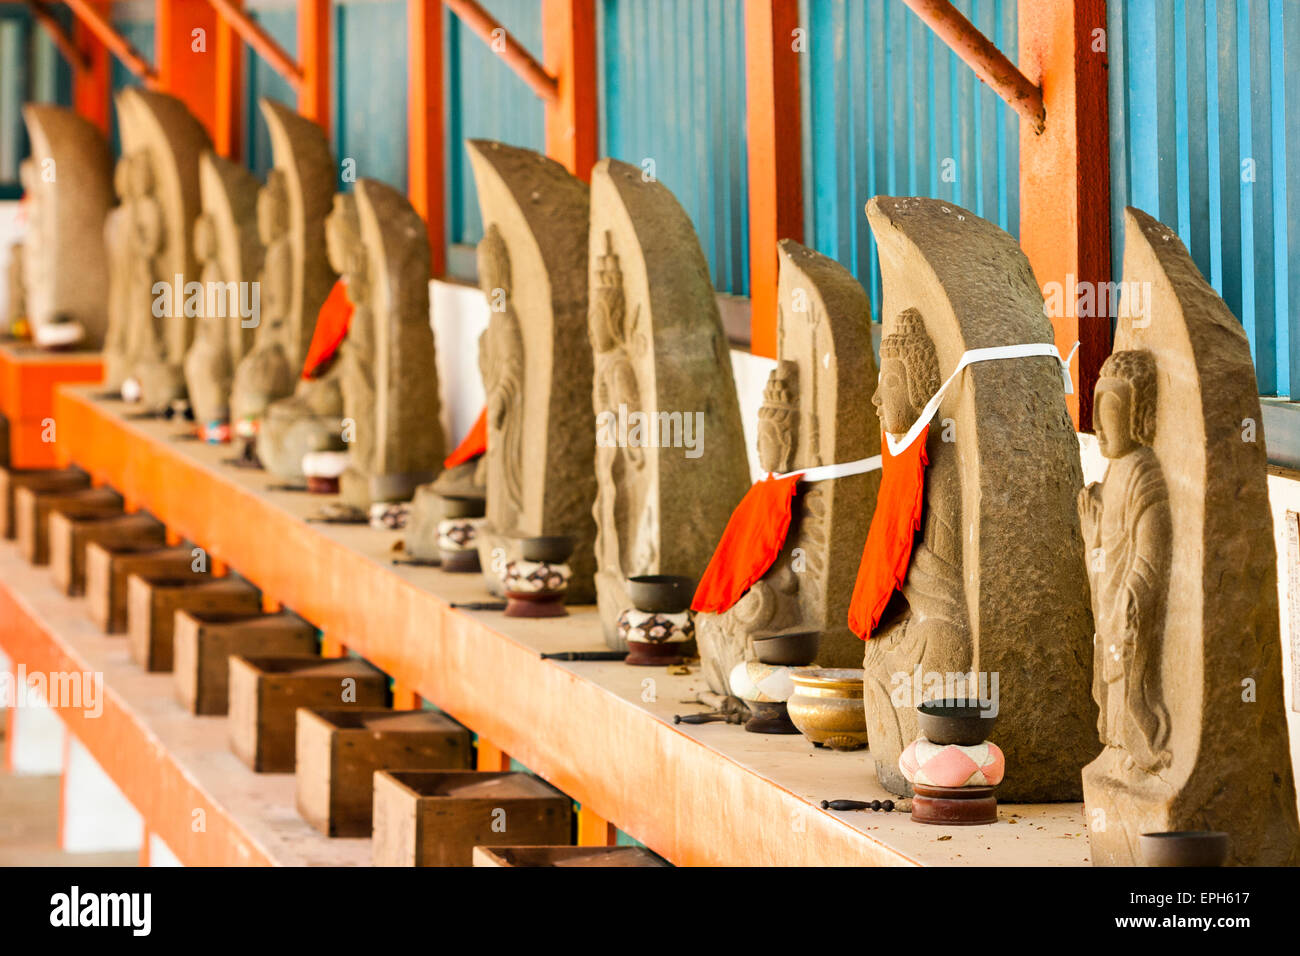 Vue le long d'une rangée de statues rouges de Jizo Bosatsu sur le pas de vermillon. Chaque statue a un petit bol laissé devant lui avec bâton de choc pour sonner. Japon. Banque D'Images